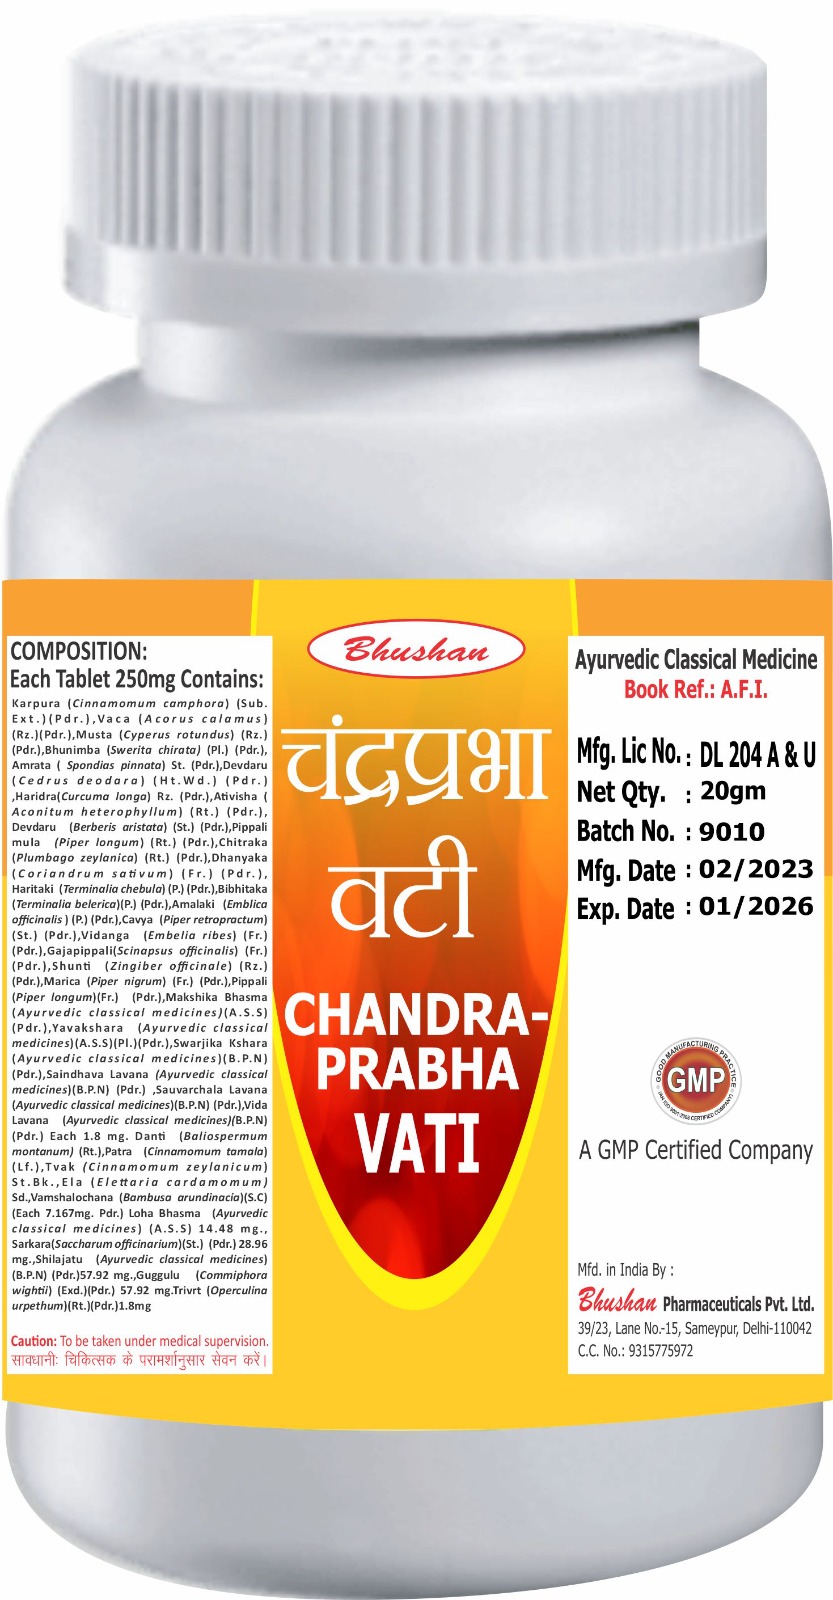 Chandra-Prabha Vati